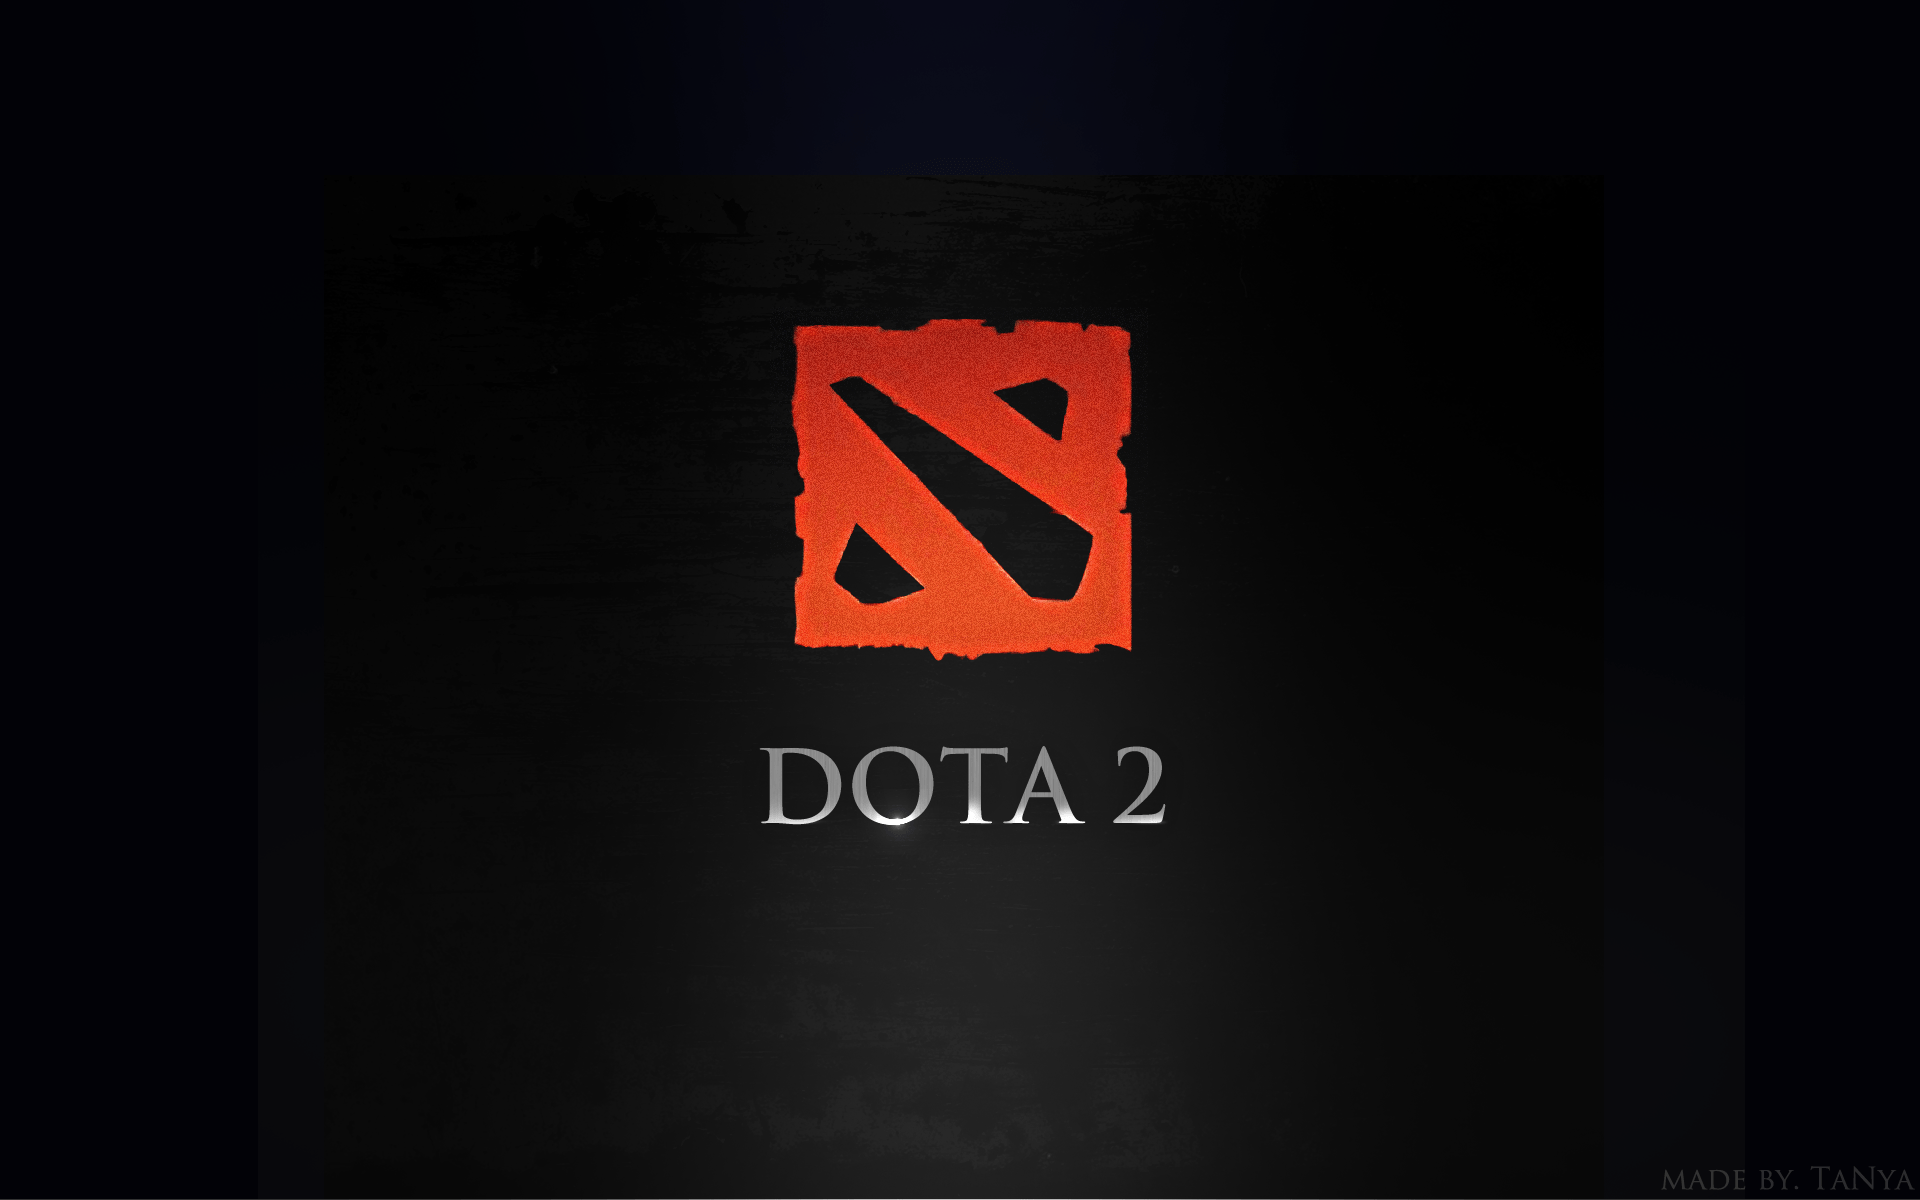 В Dota 2 появился курьер в виде символа создателя игры